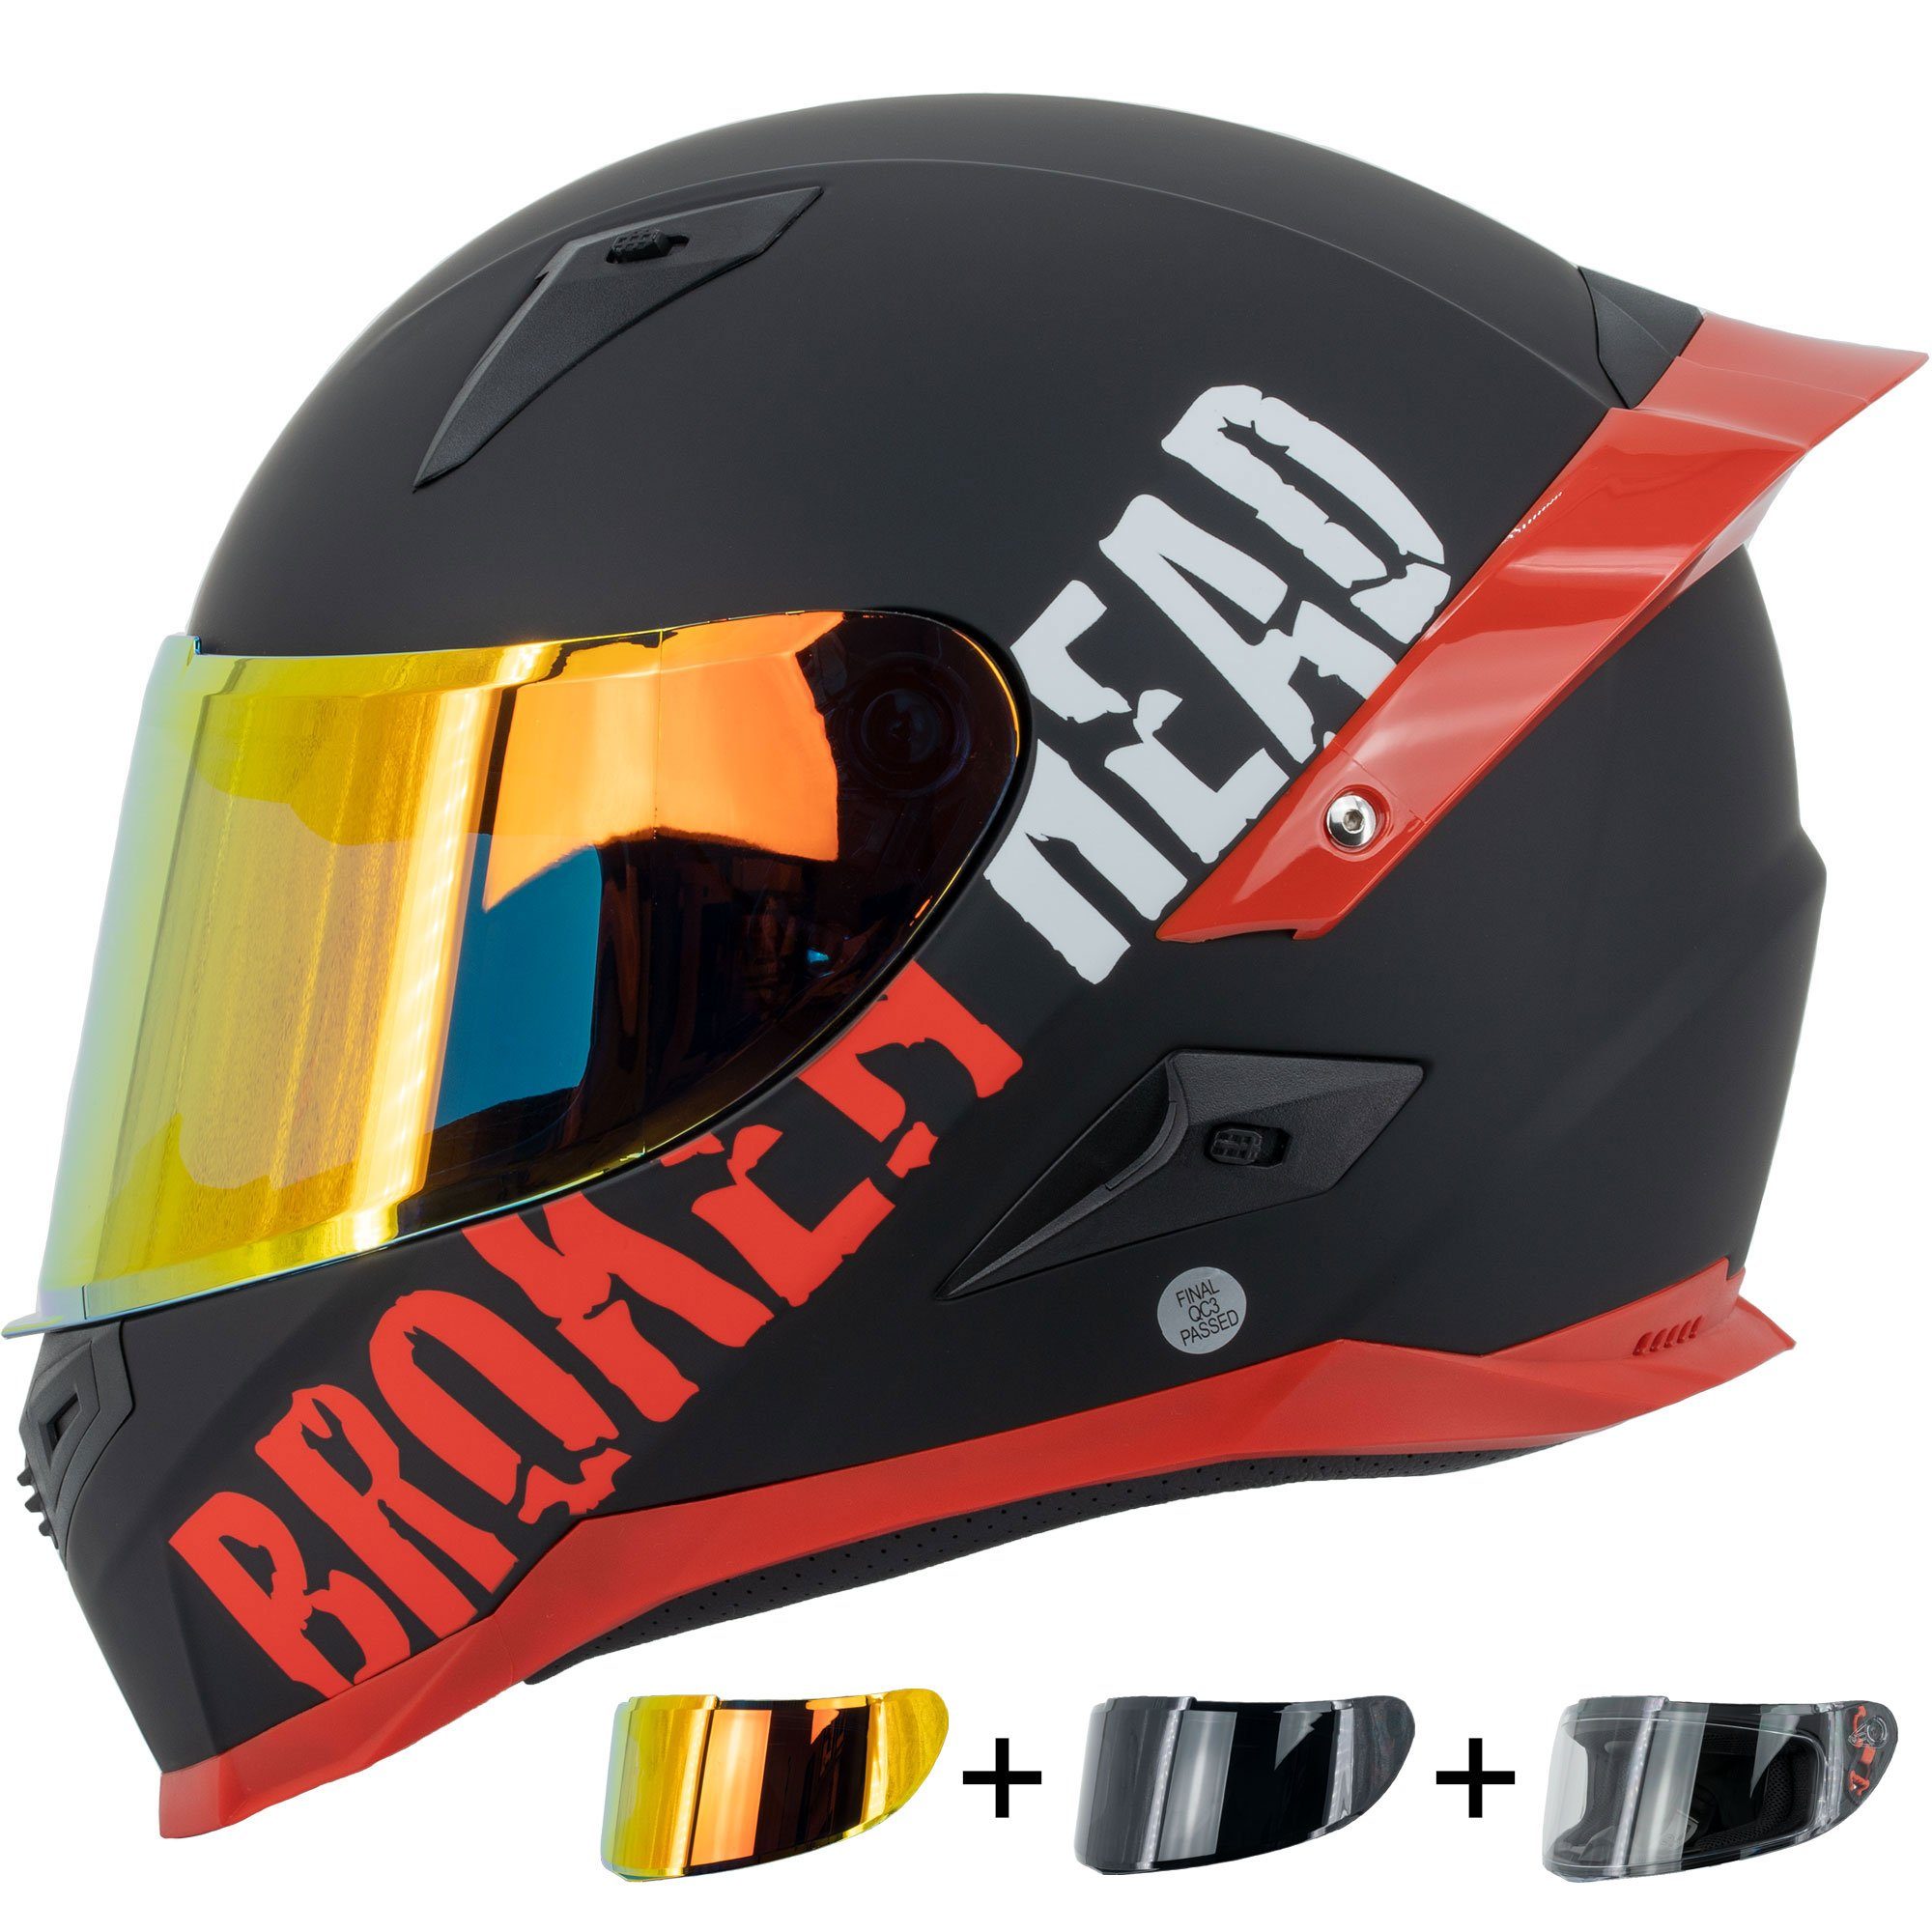 Broken Head Motorradhelm BeProud Pro Rot (LIMITED EDITION, mit schwarzem,  rot verspiegeltem und klarem Visier), inklusive 3 Visieren